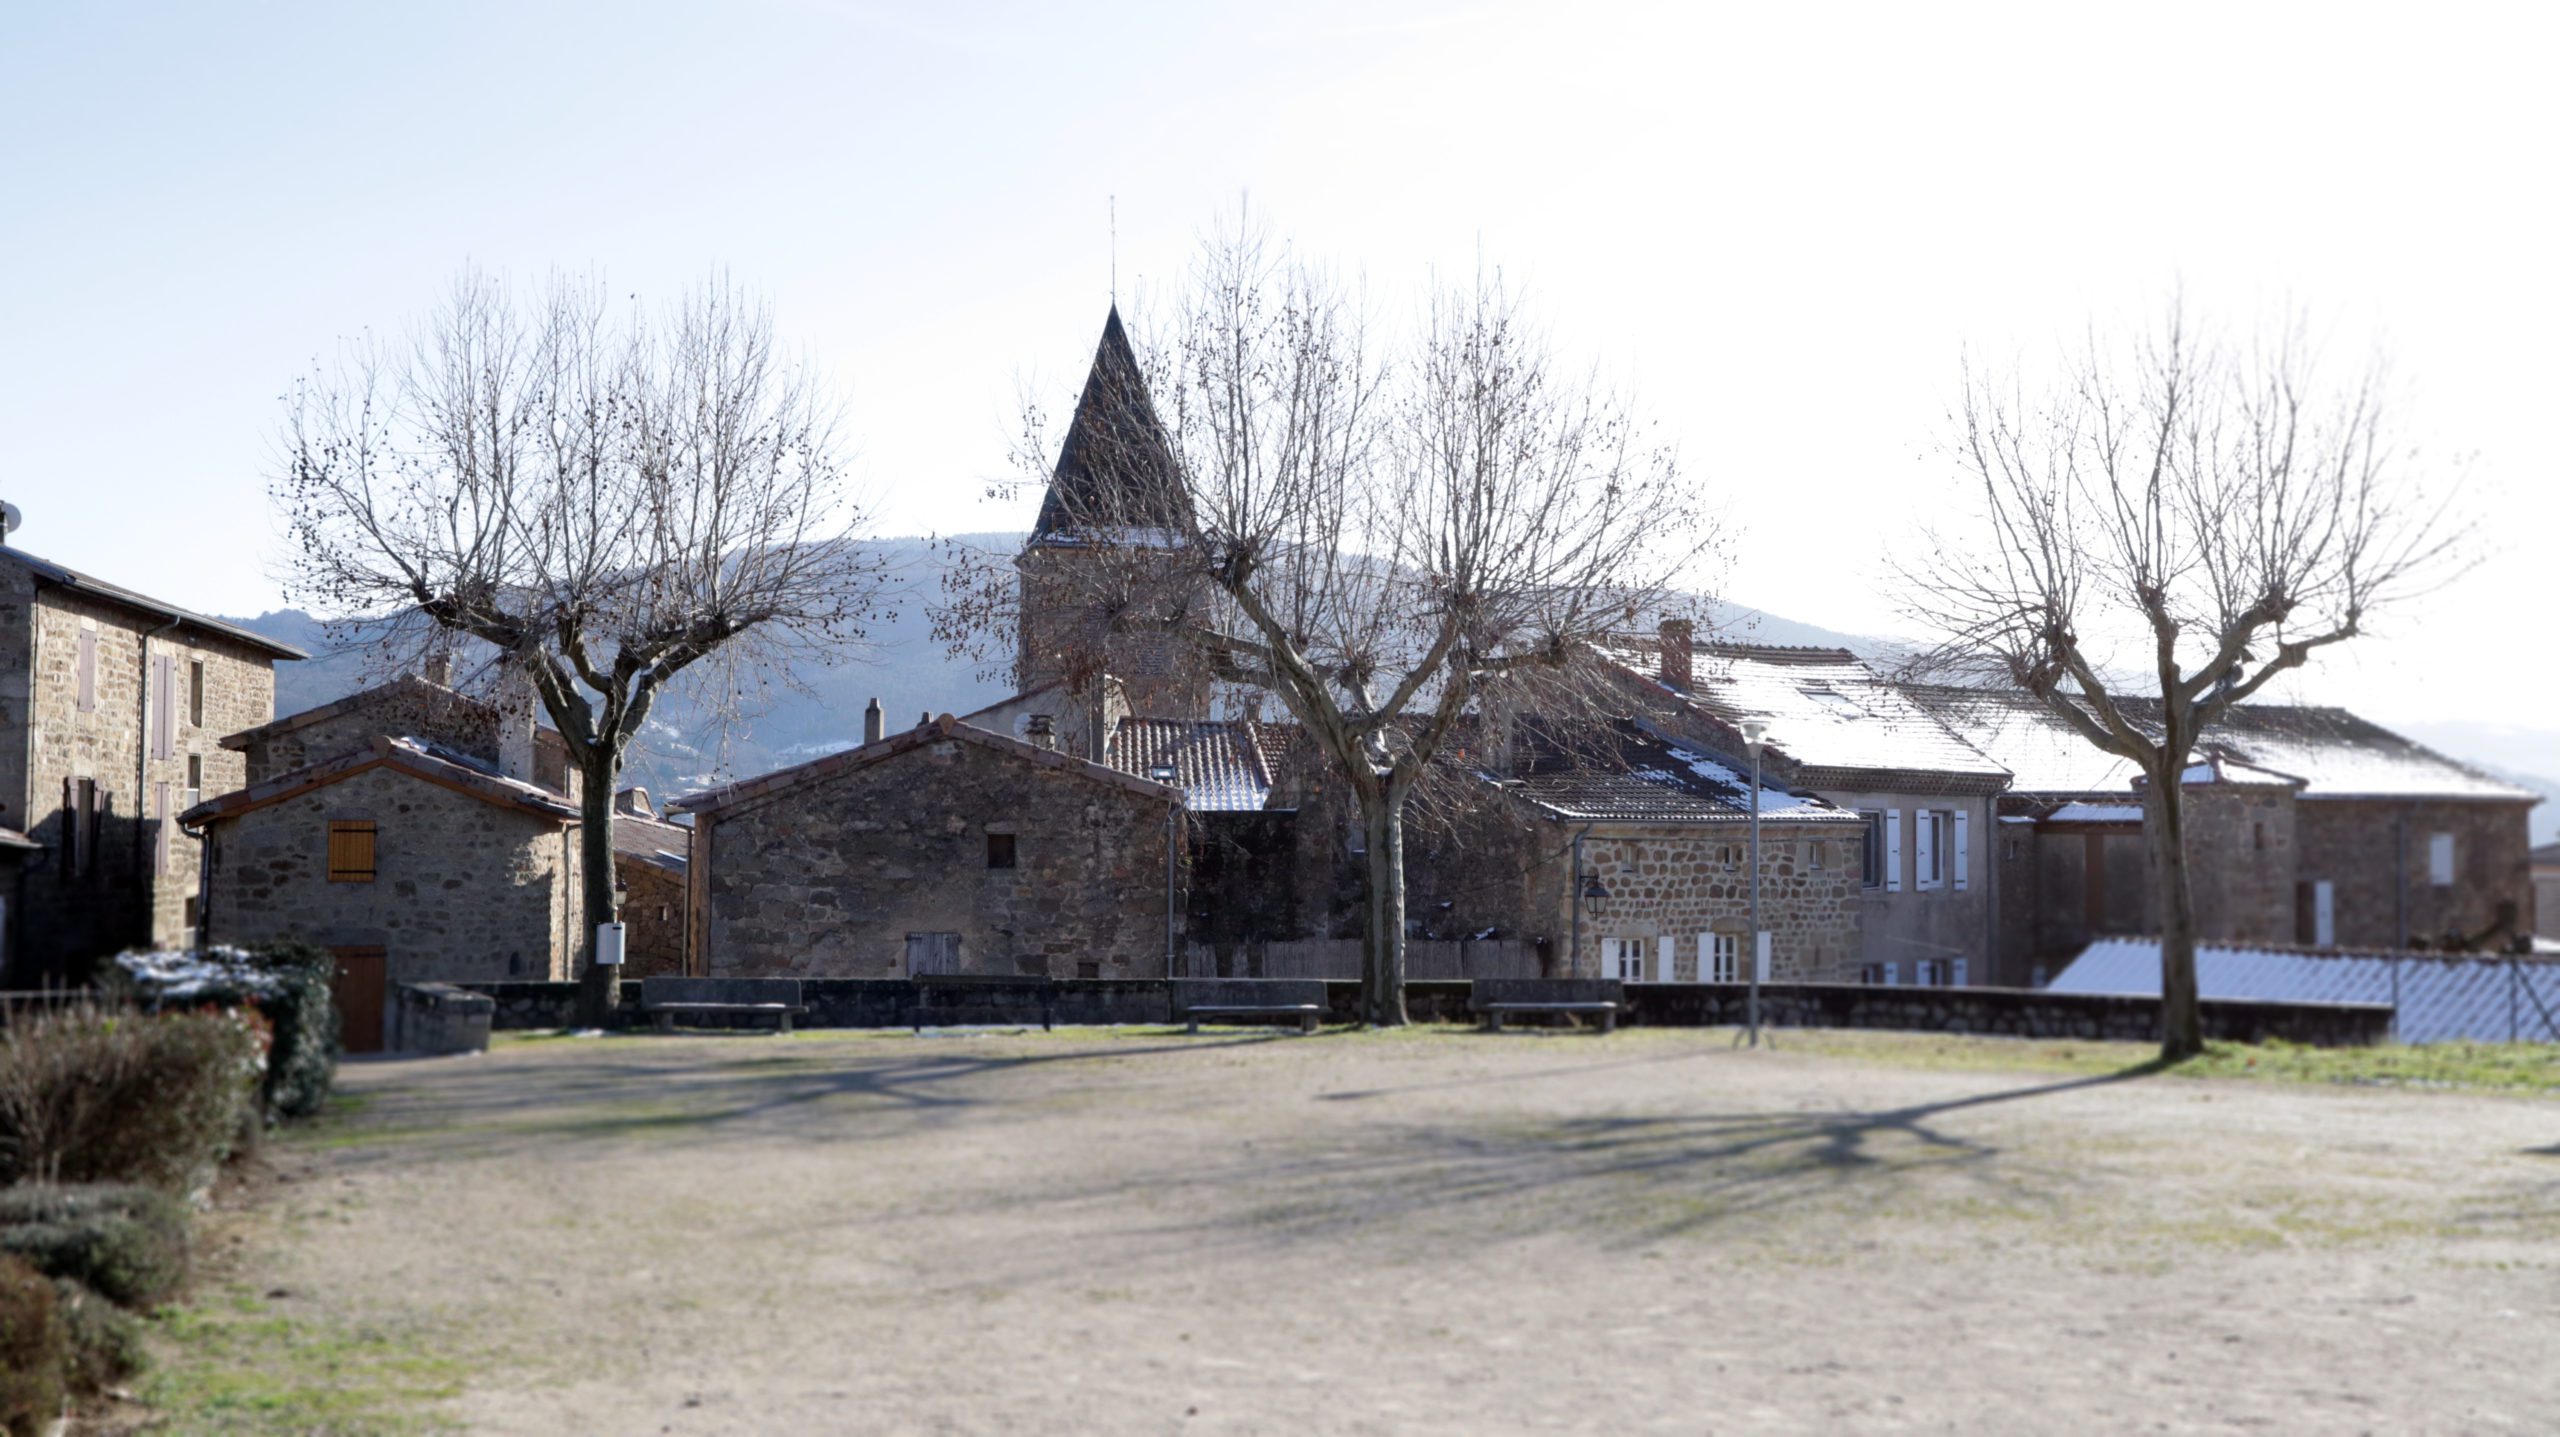 Arlebosc village